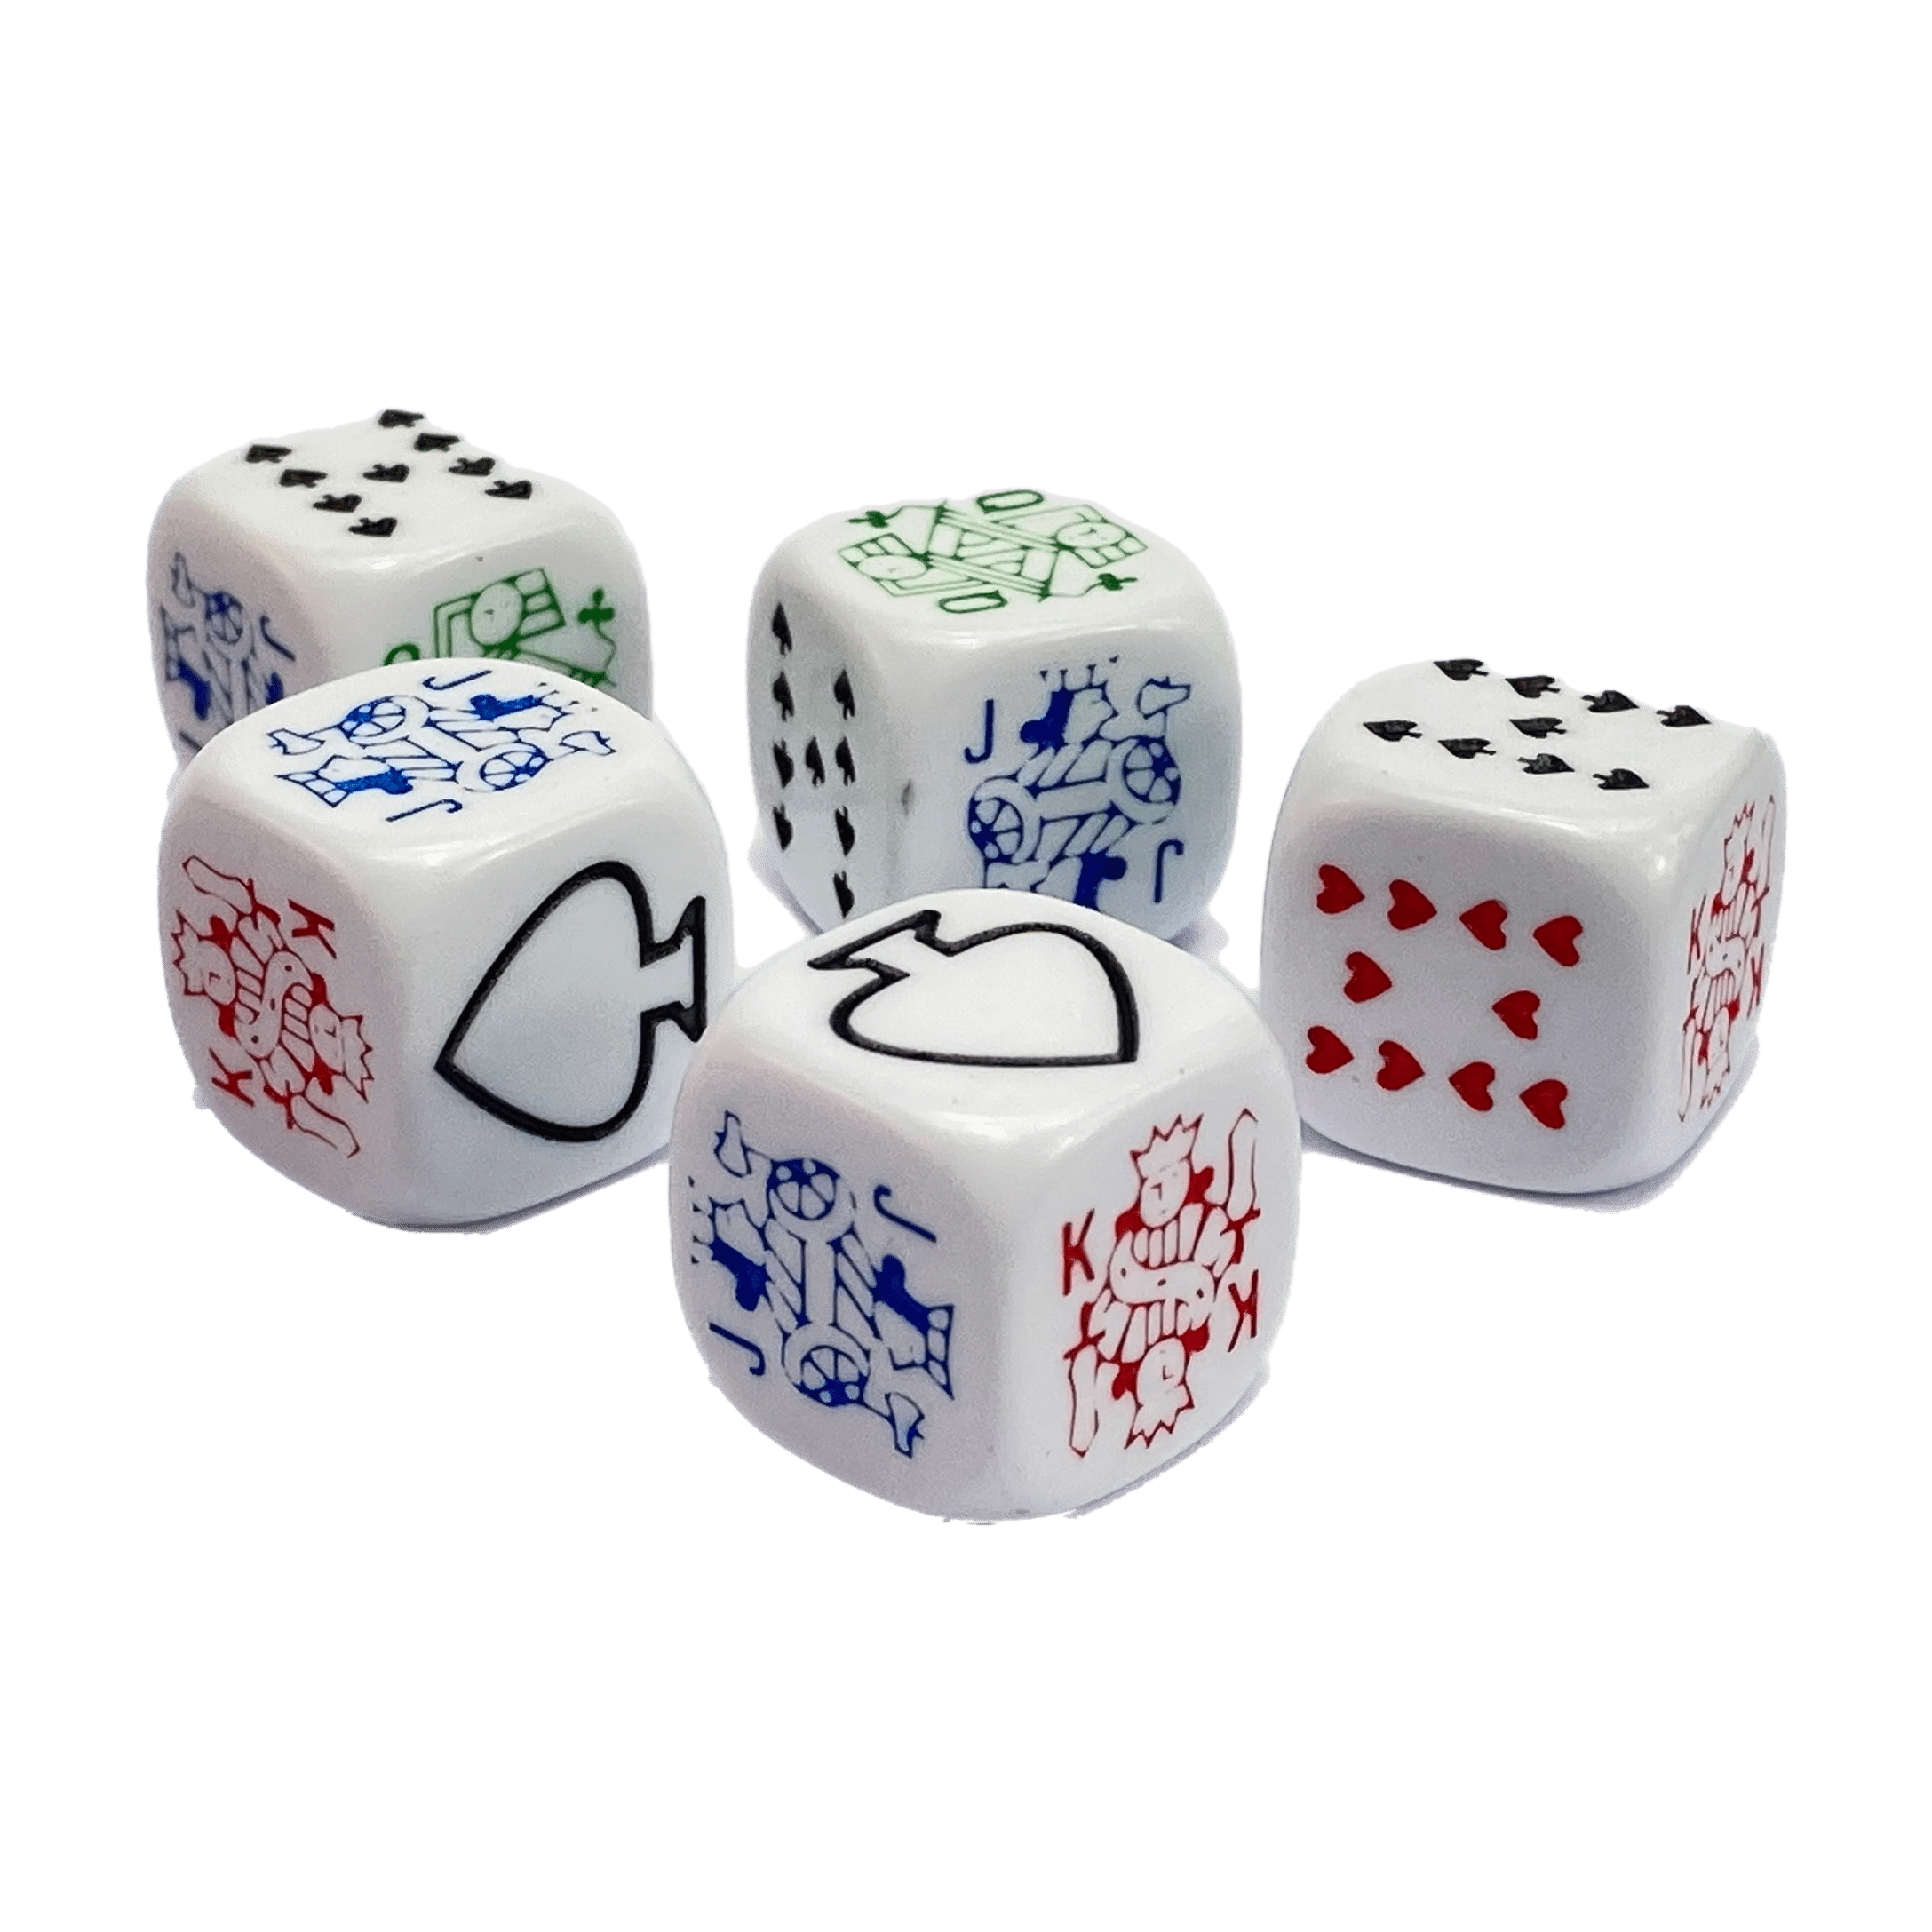 Poker Dobbelstenen Set van 18mm Dobbelstenenshop